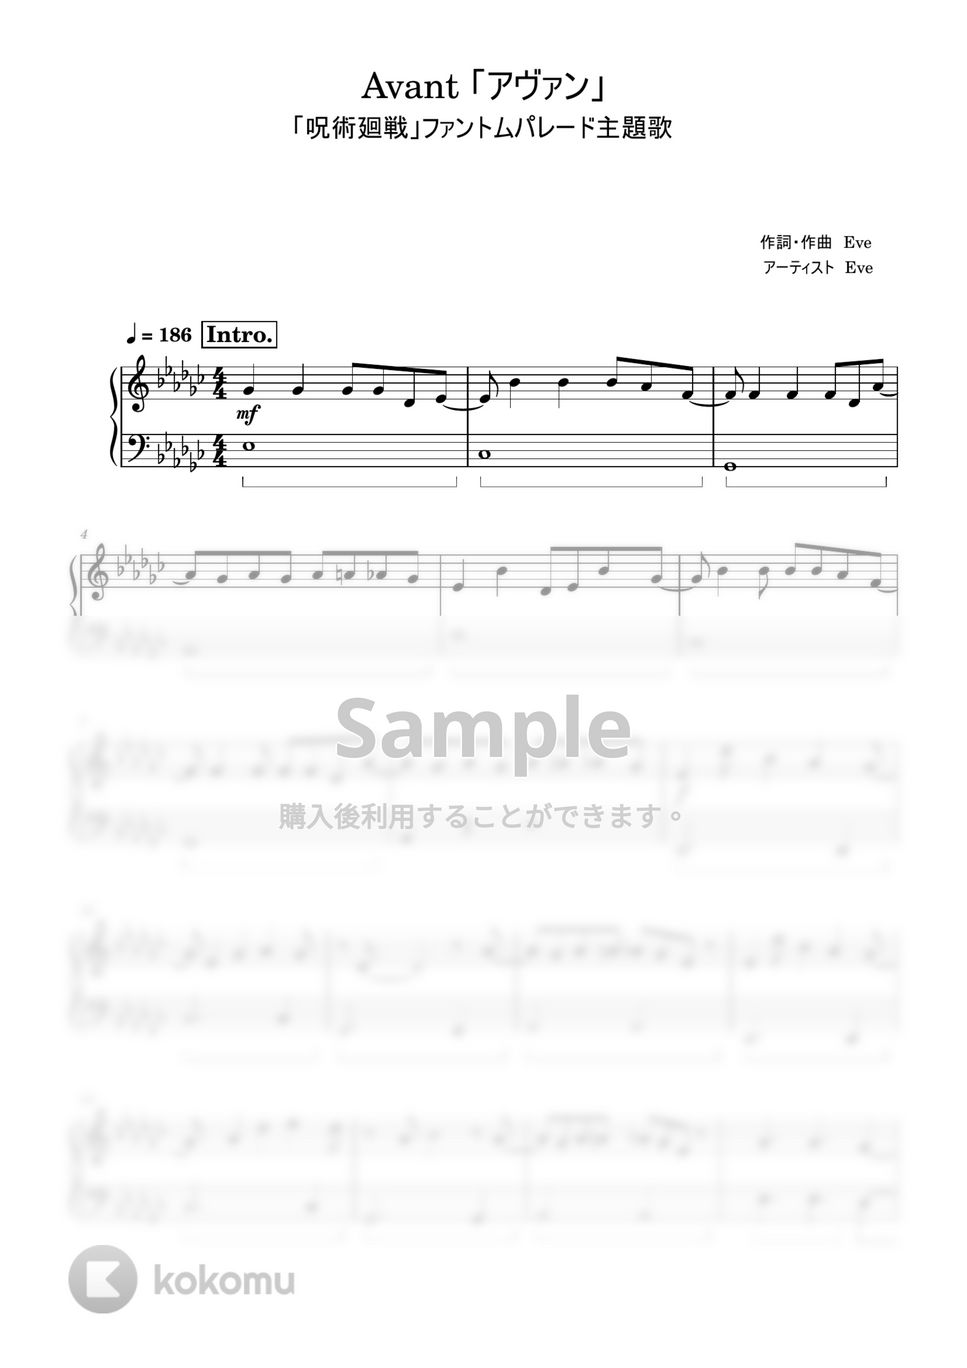 「呪術廻戦」ファントムパレード - アヴァン (初級レベル) by Saori8Piano